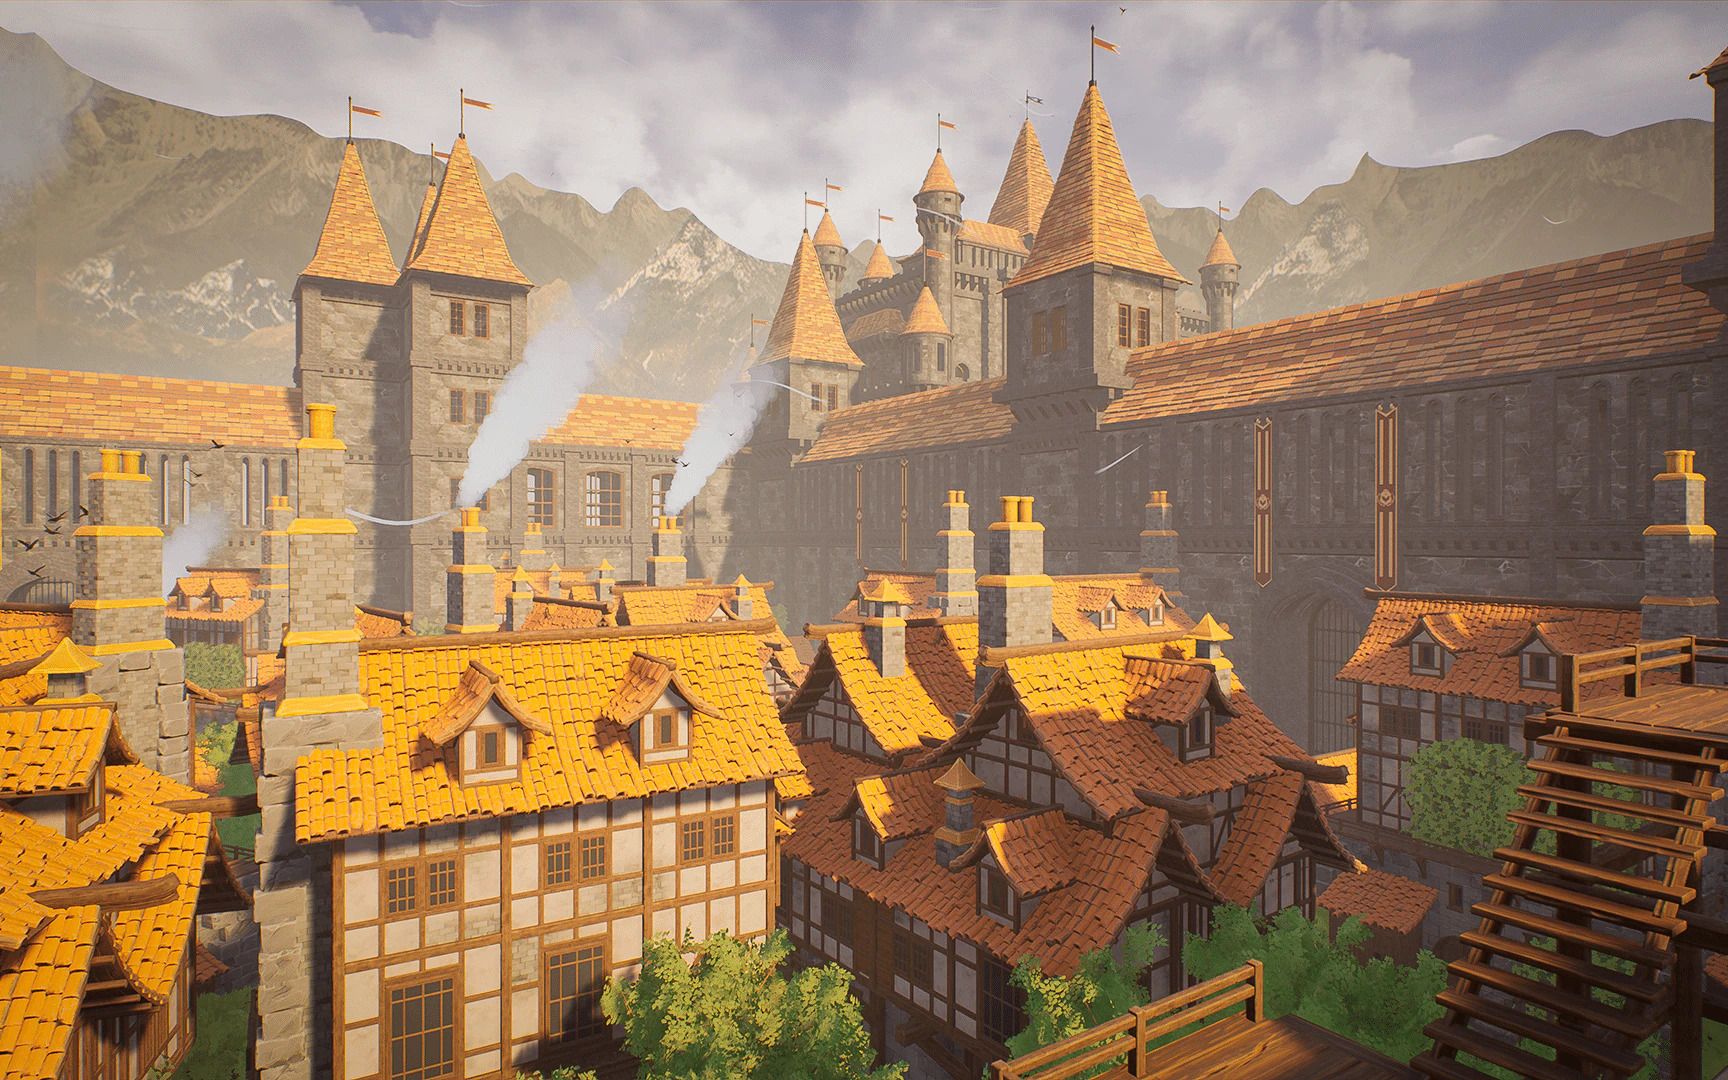 模块化中世纪城堡城镇环境场景unreal engine游戏素材 演示视频 rrcg